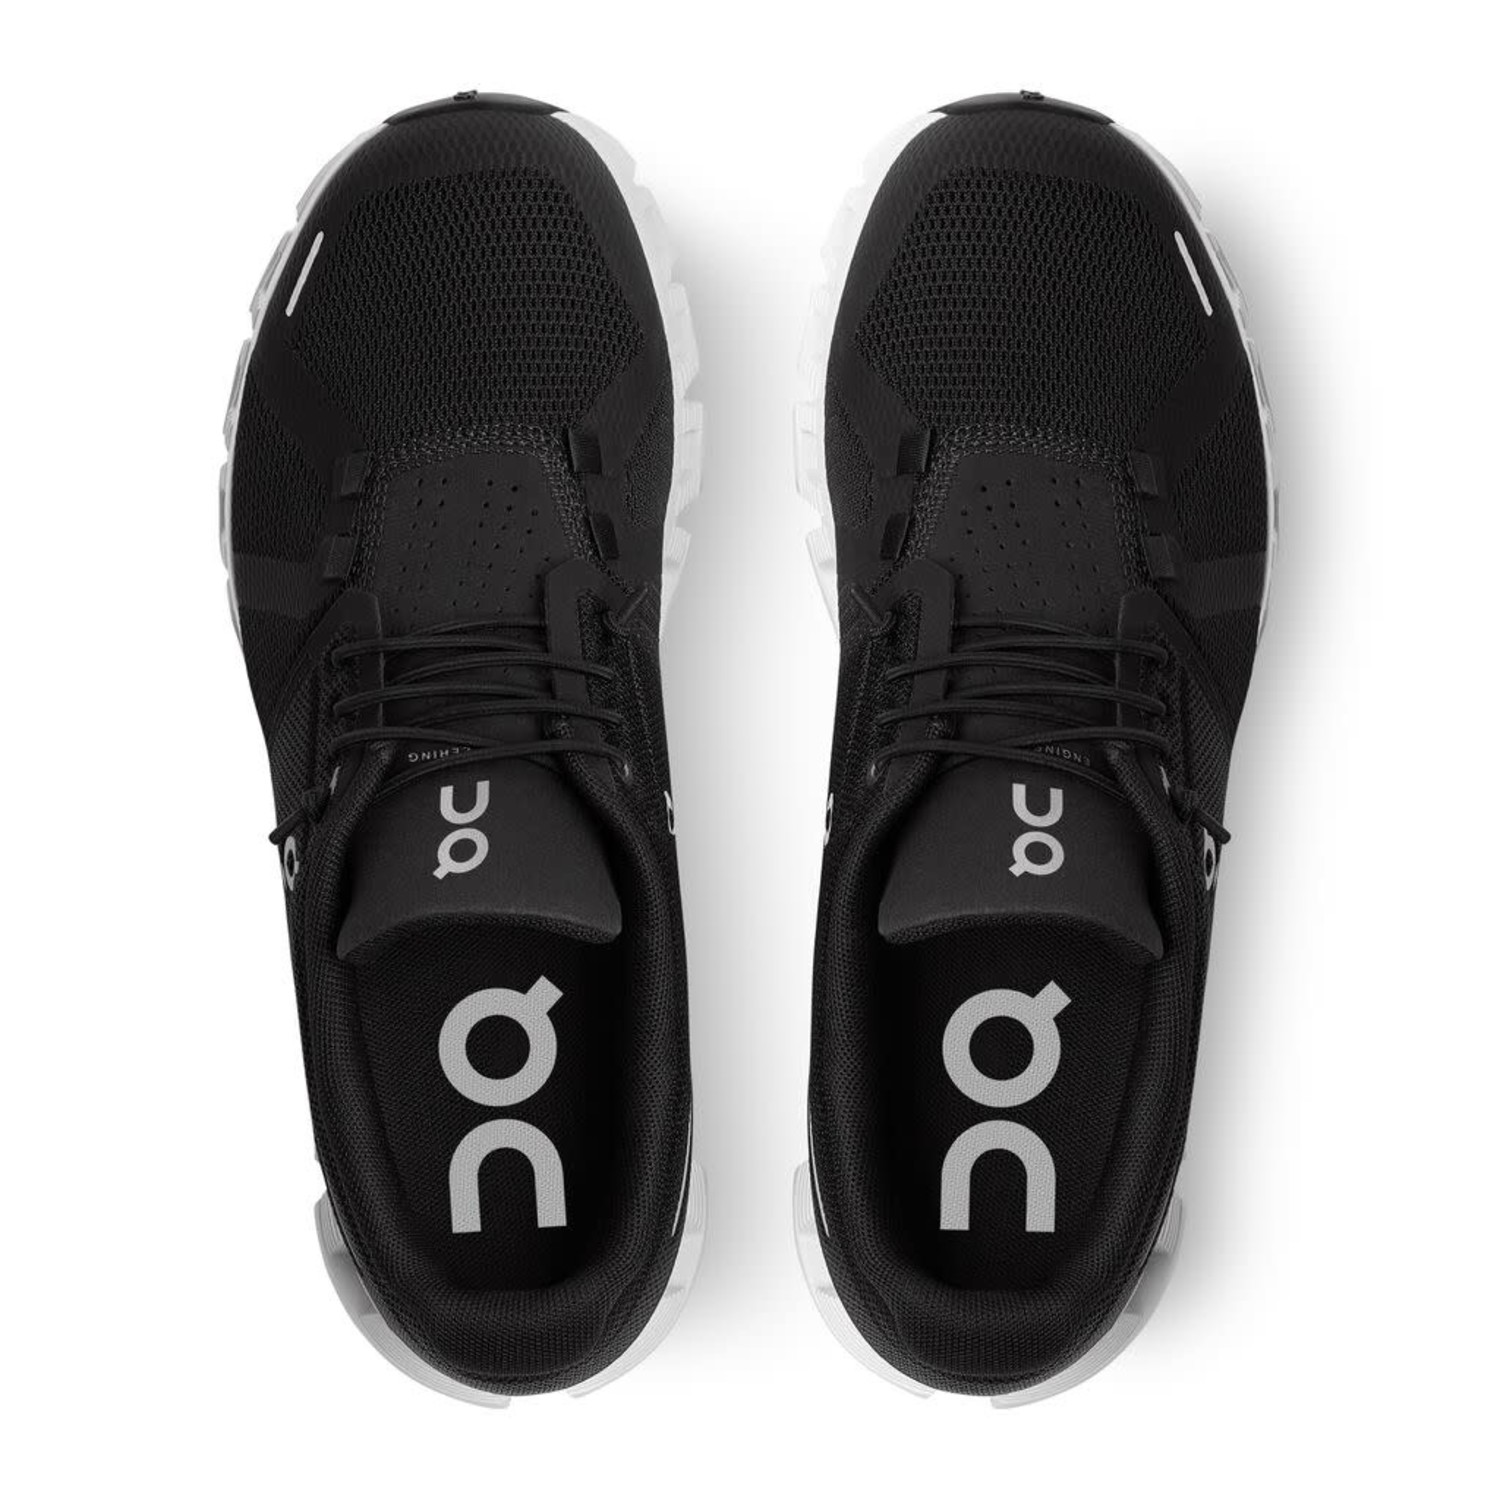 Men's OOmg Mesh - Black/White - Gentry's Footwear